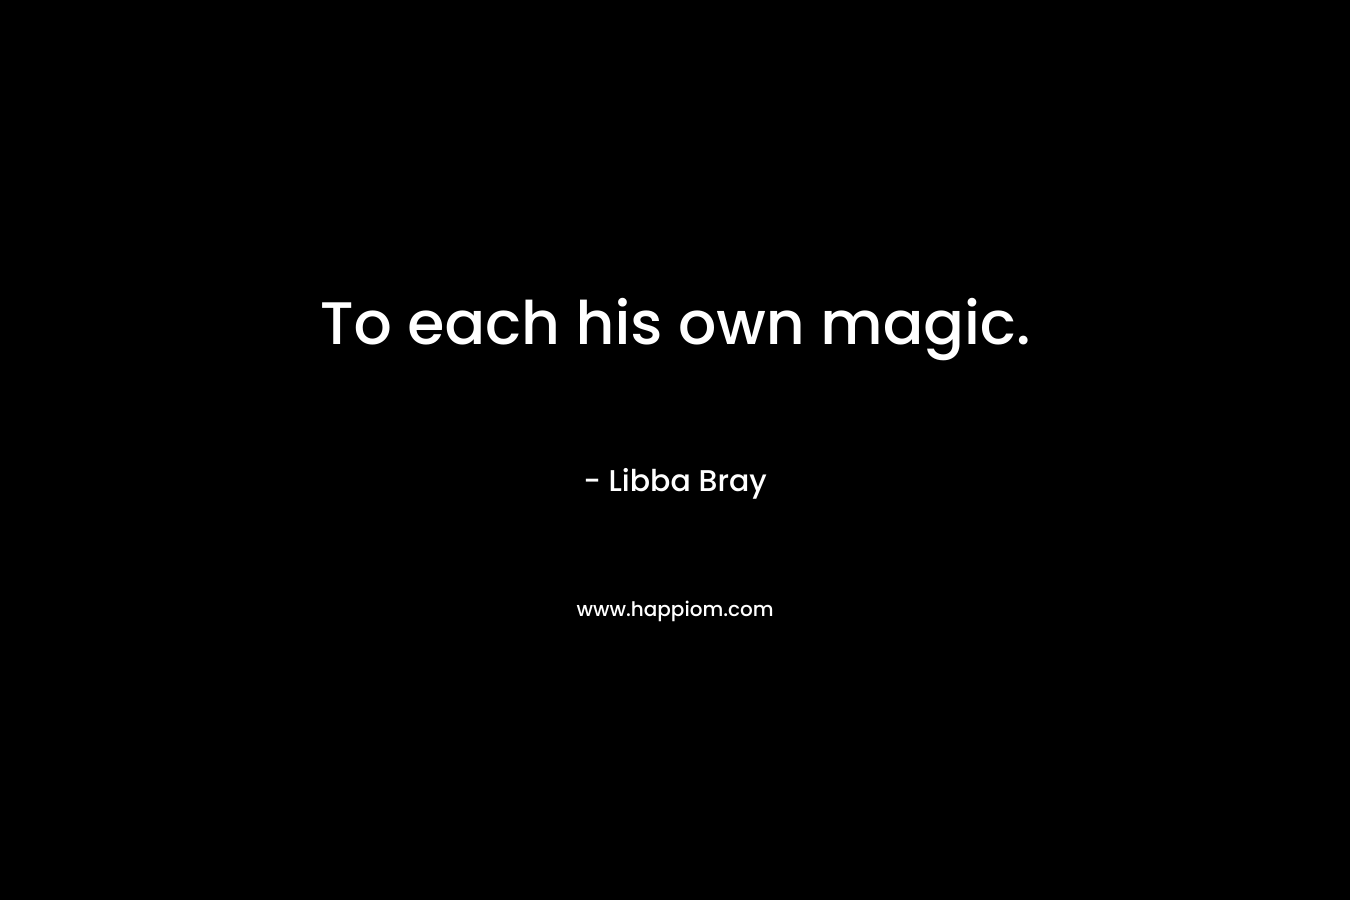 To each his own magic.